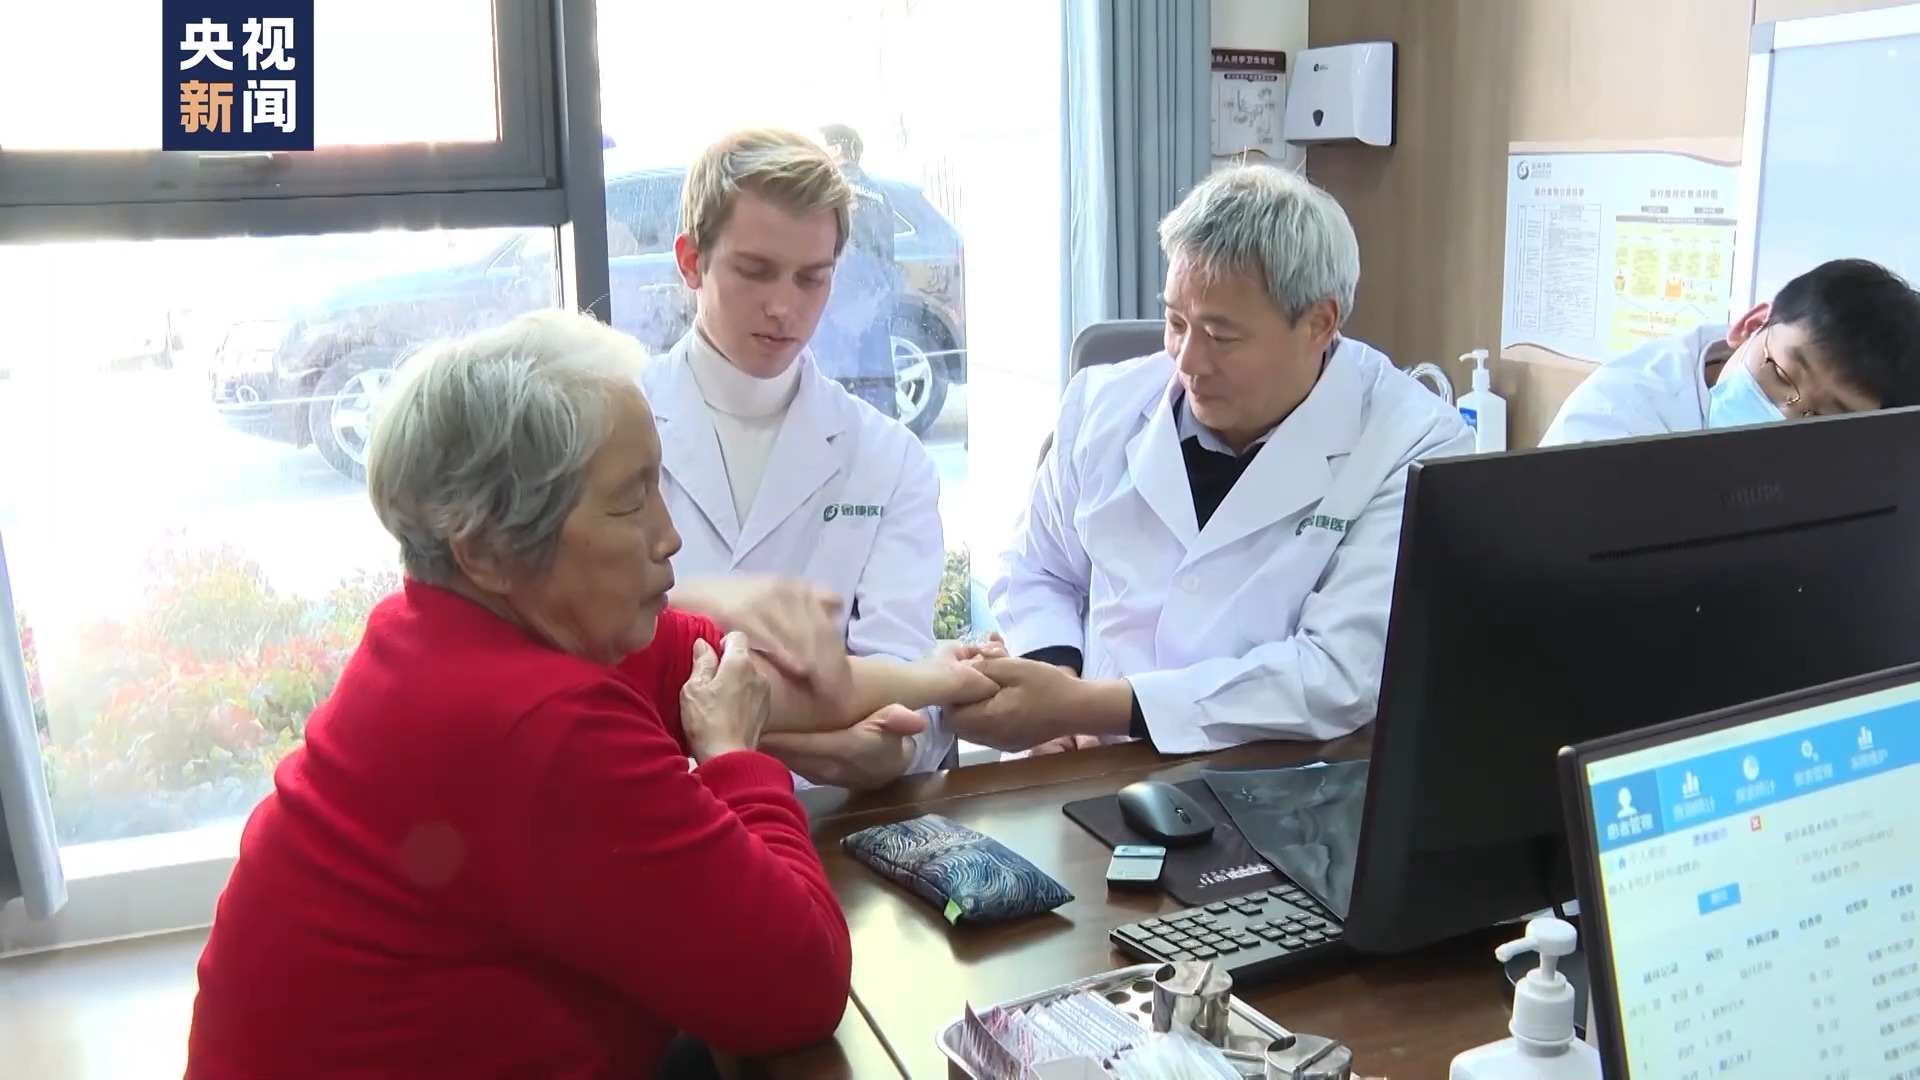 Joel Mikael Walker învață cu medici chinezi cum să dea o consultaţie medicală.